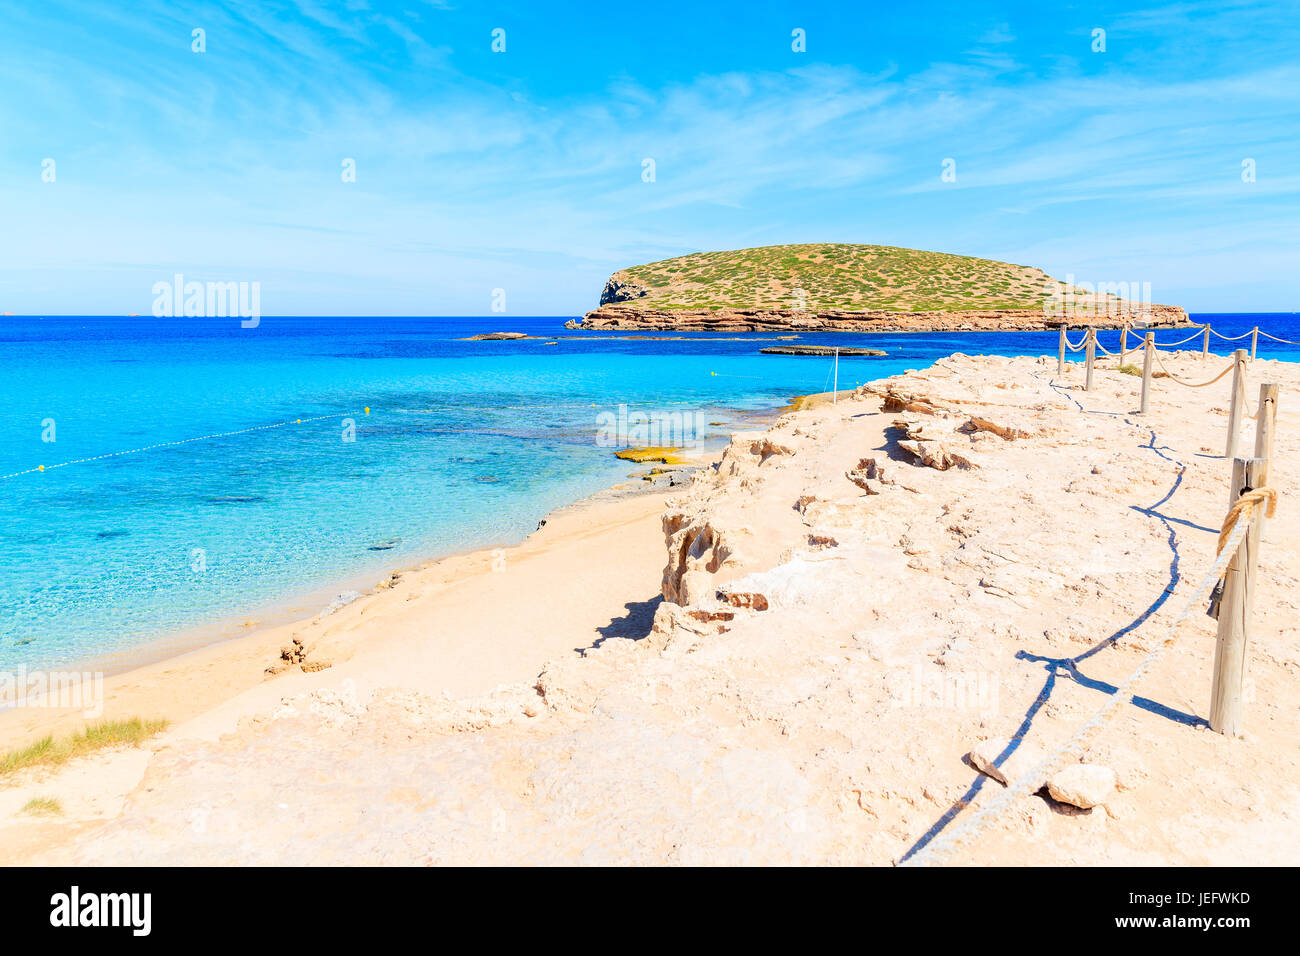 Sentier du littoral le long de la plage de Cala Comte magnifique célèbre pour son azur clair comme de l'eau de mer peu profonde, l'île d'Ibiza, Espagne Banque D'Images